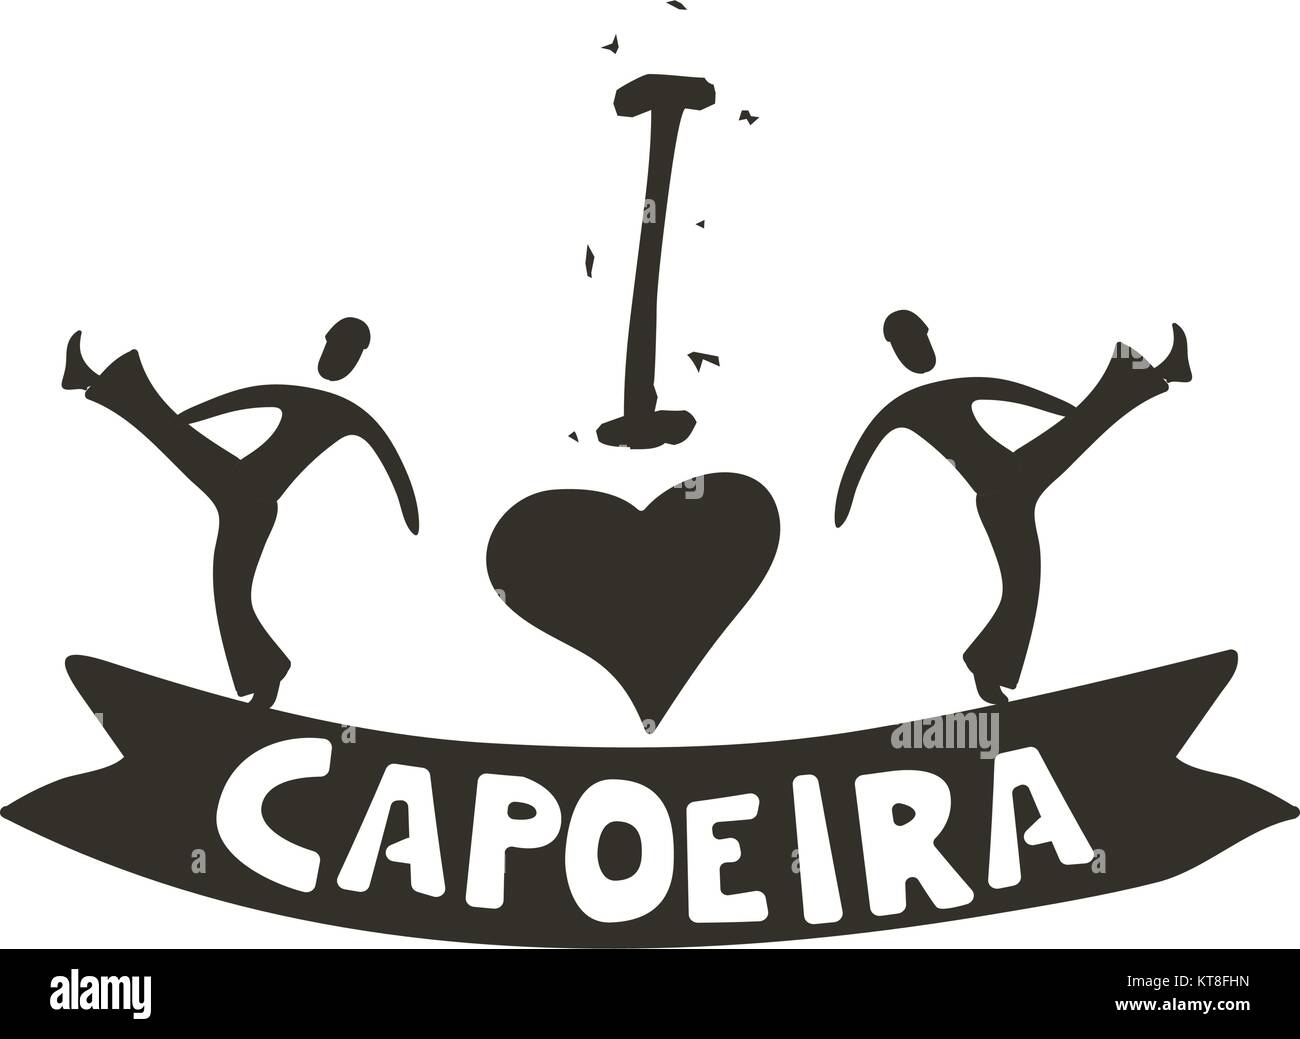 La Capoeira uniquement pour les braves poster Illustration de Vecteur